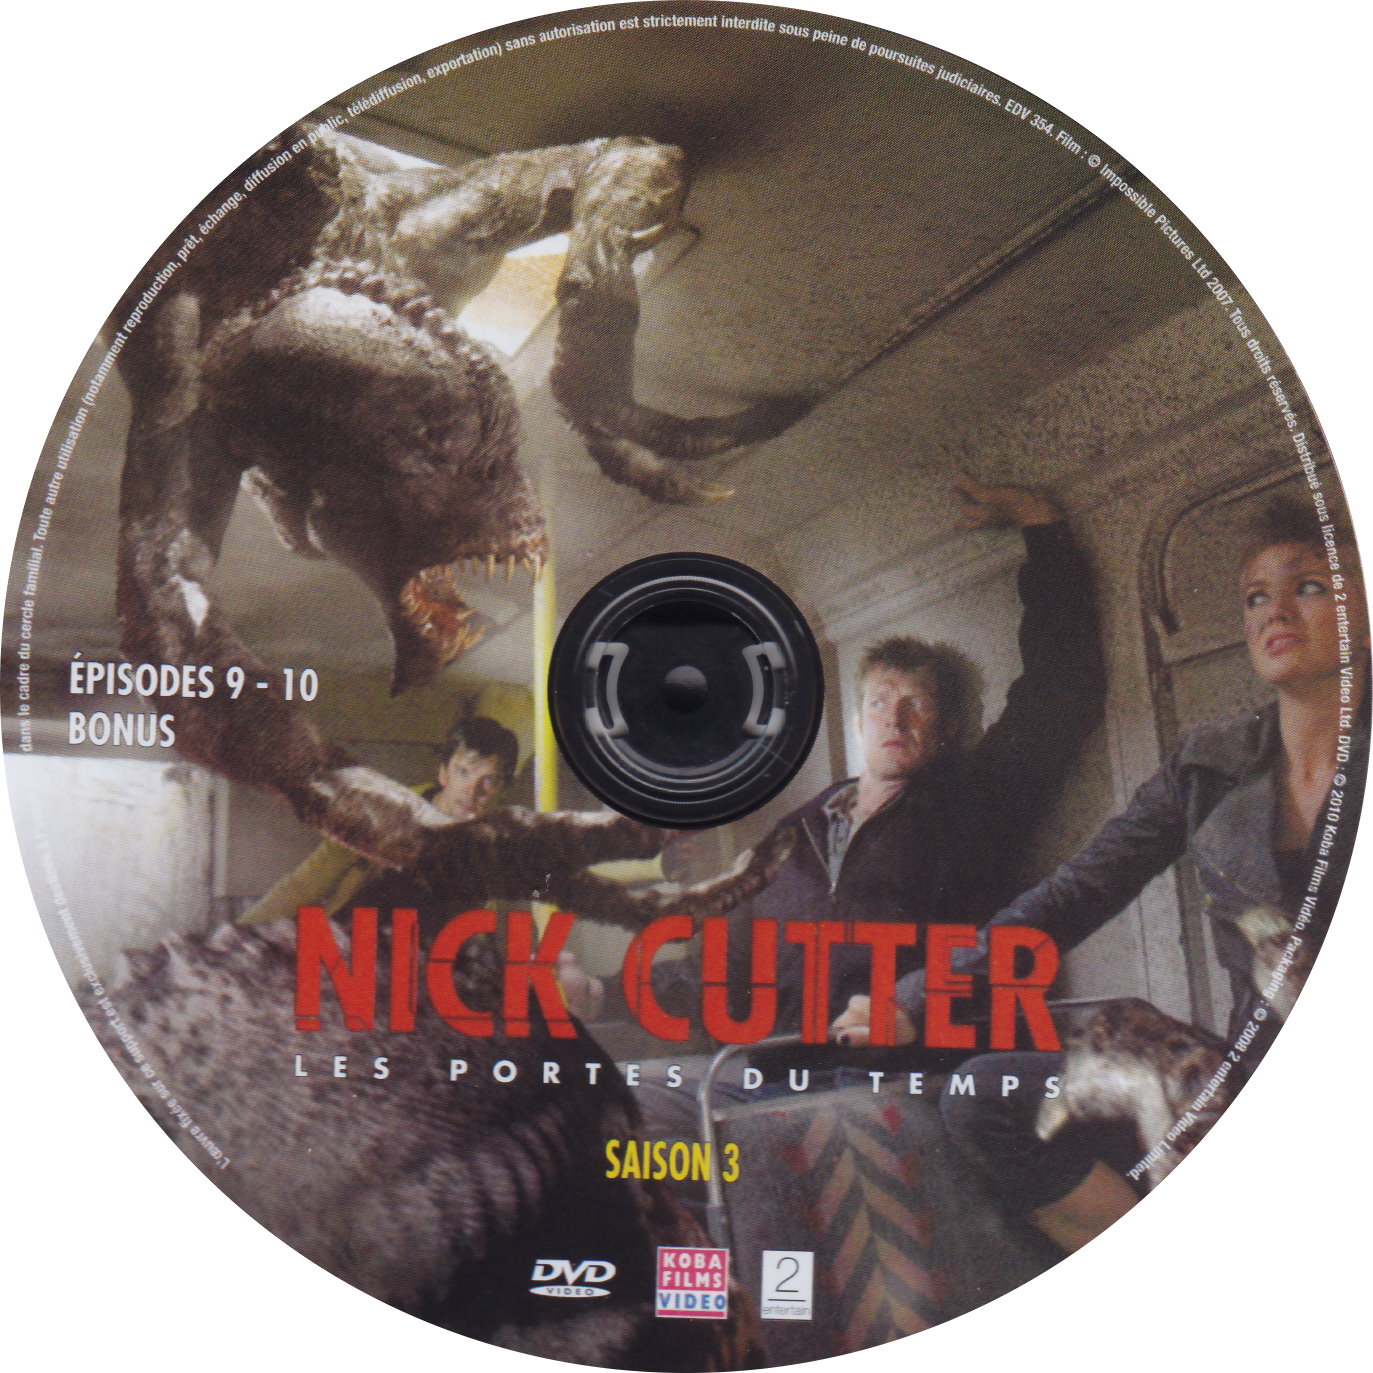 Nick Cutter Les portes du temps Saison 3 DISC 3